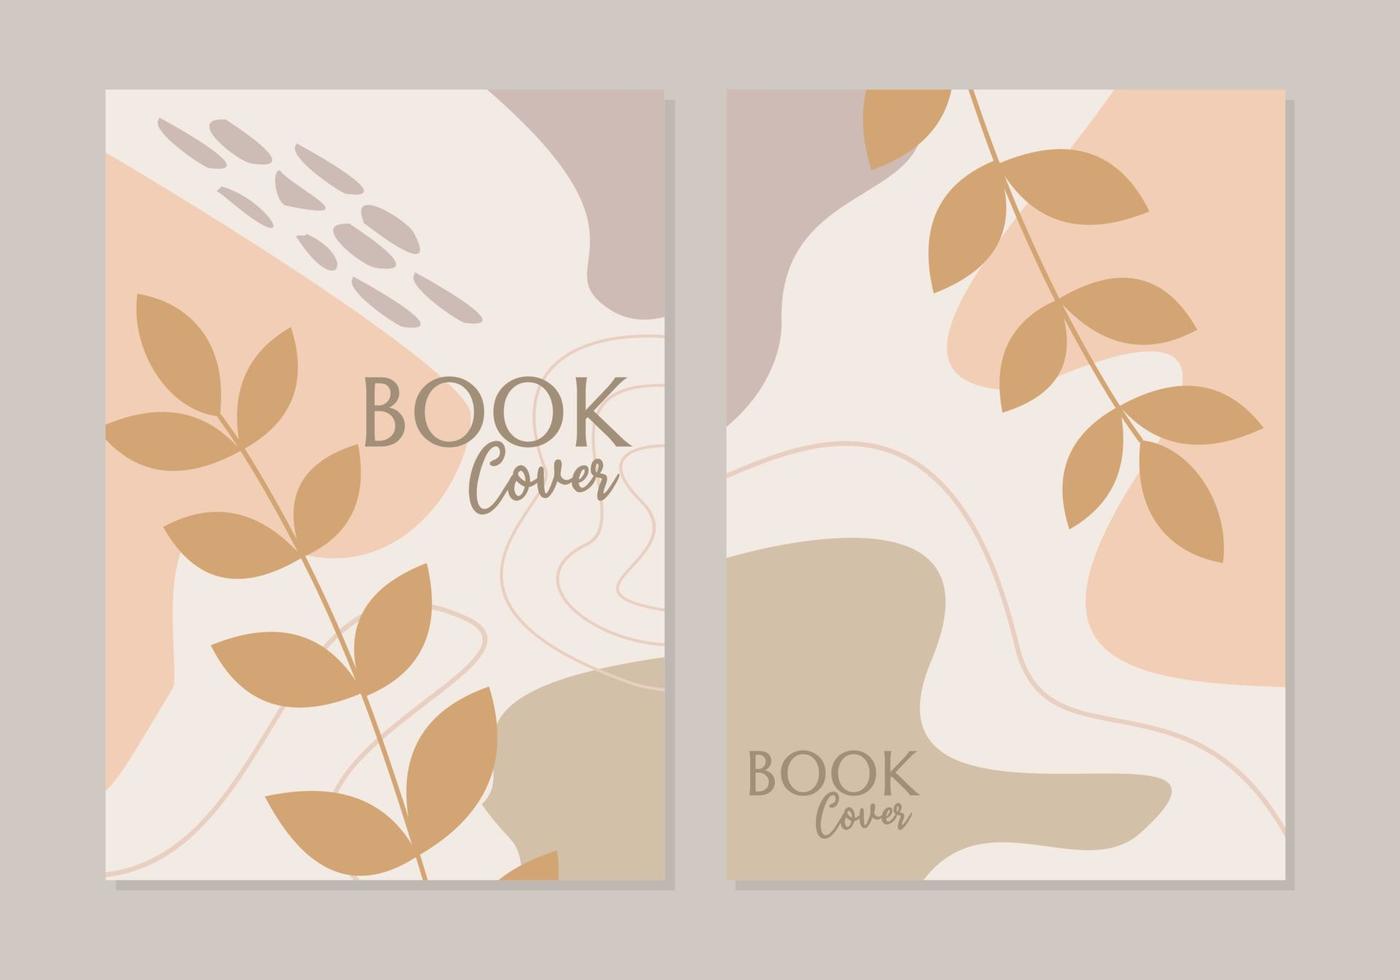 Vektorsatz für botanische Bucheinbände. Boho-Laubstrichzeichnung mit abstrakter Form. kann für Druck, Cover, Tapete, minimale und natürliche Wandkunst verwendet werden. vektor